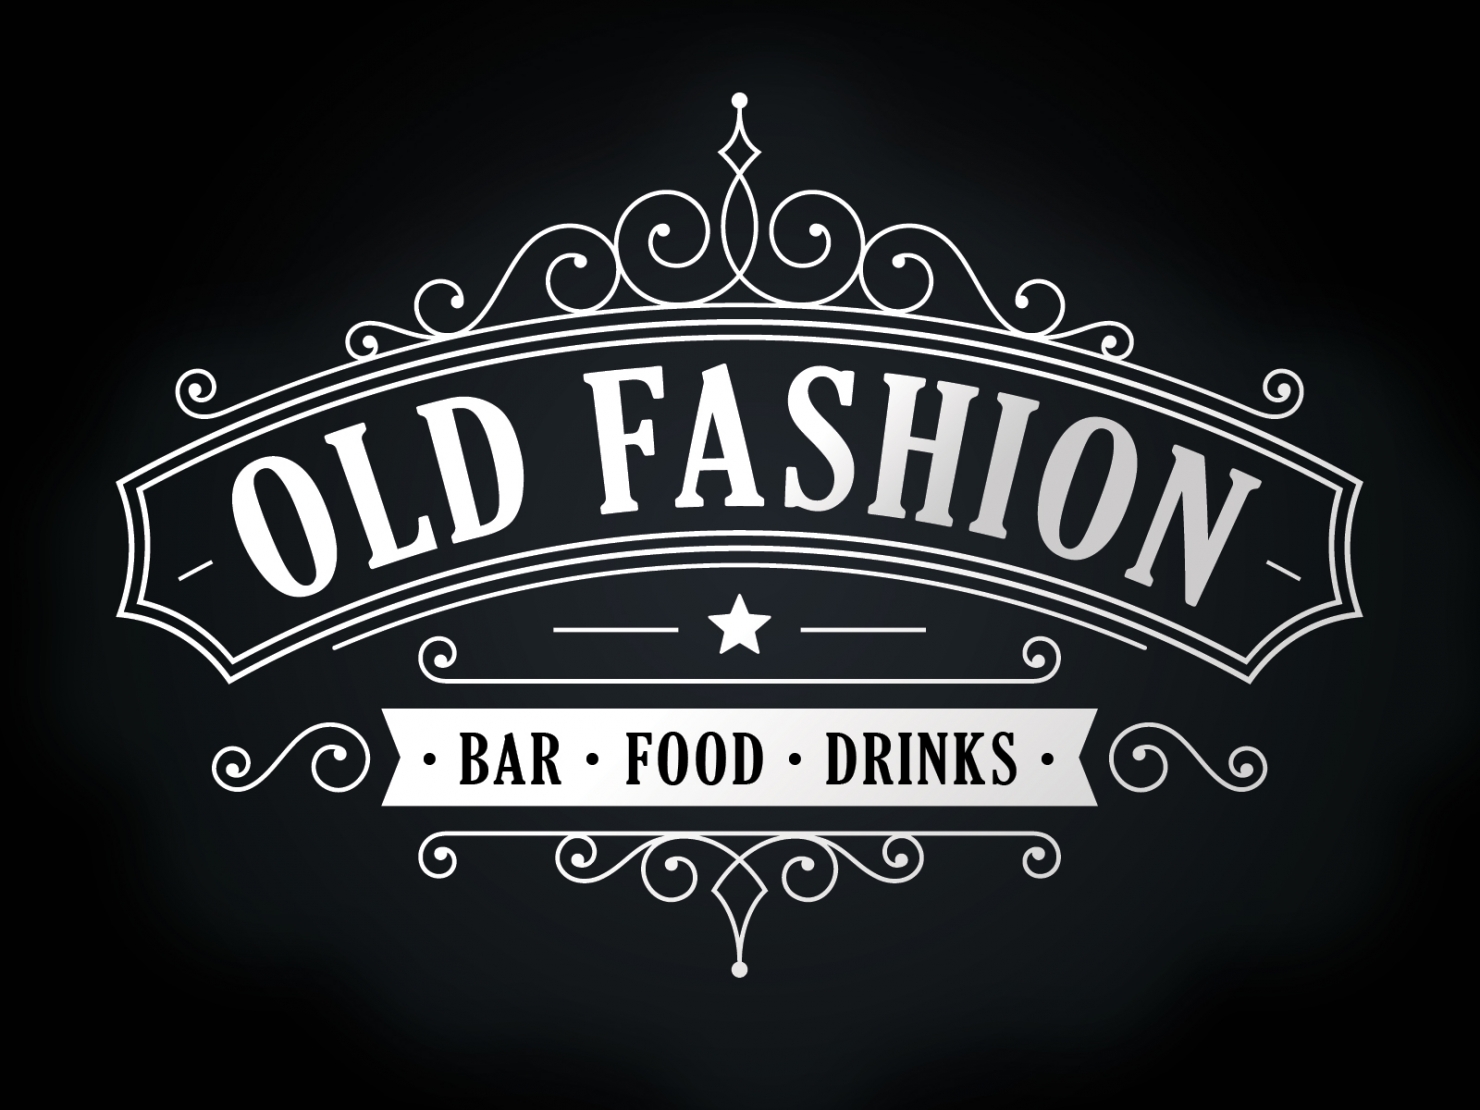 Bar "Old Fashion" logo